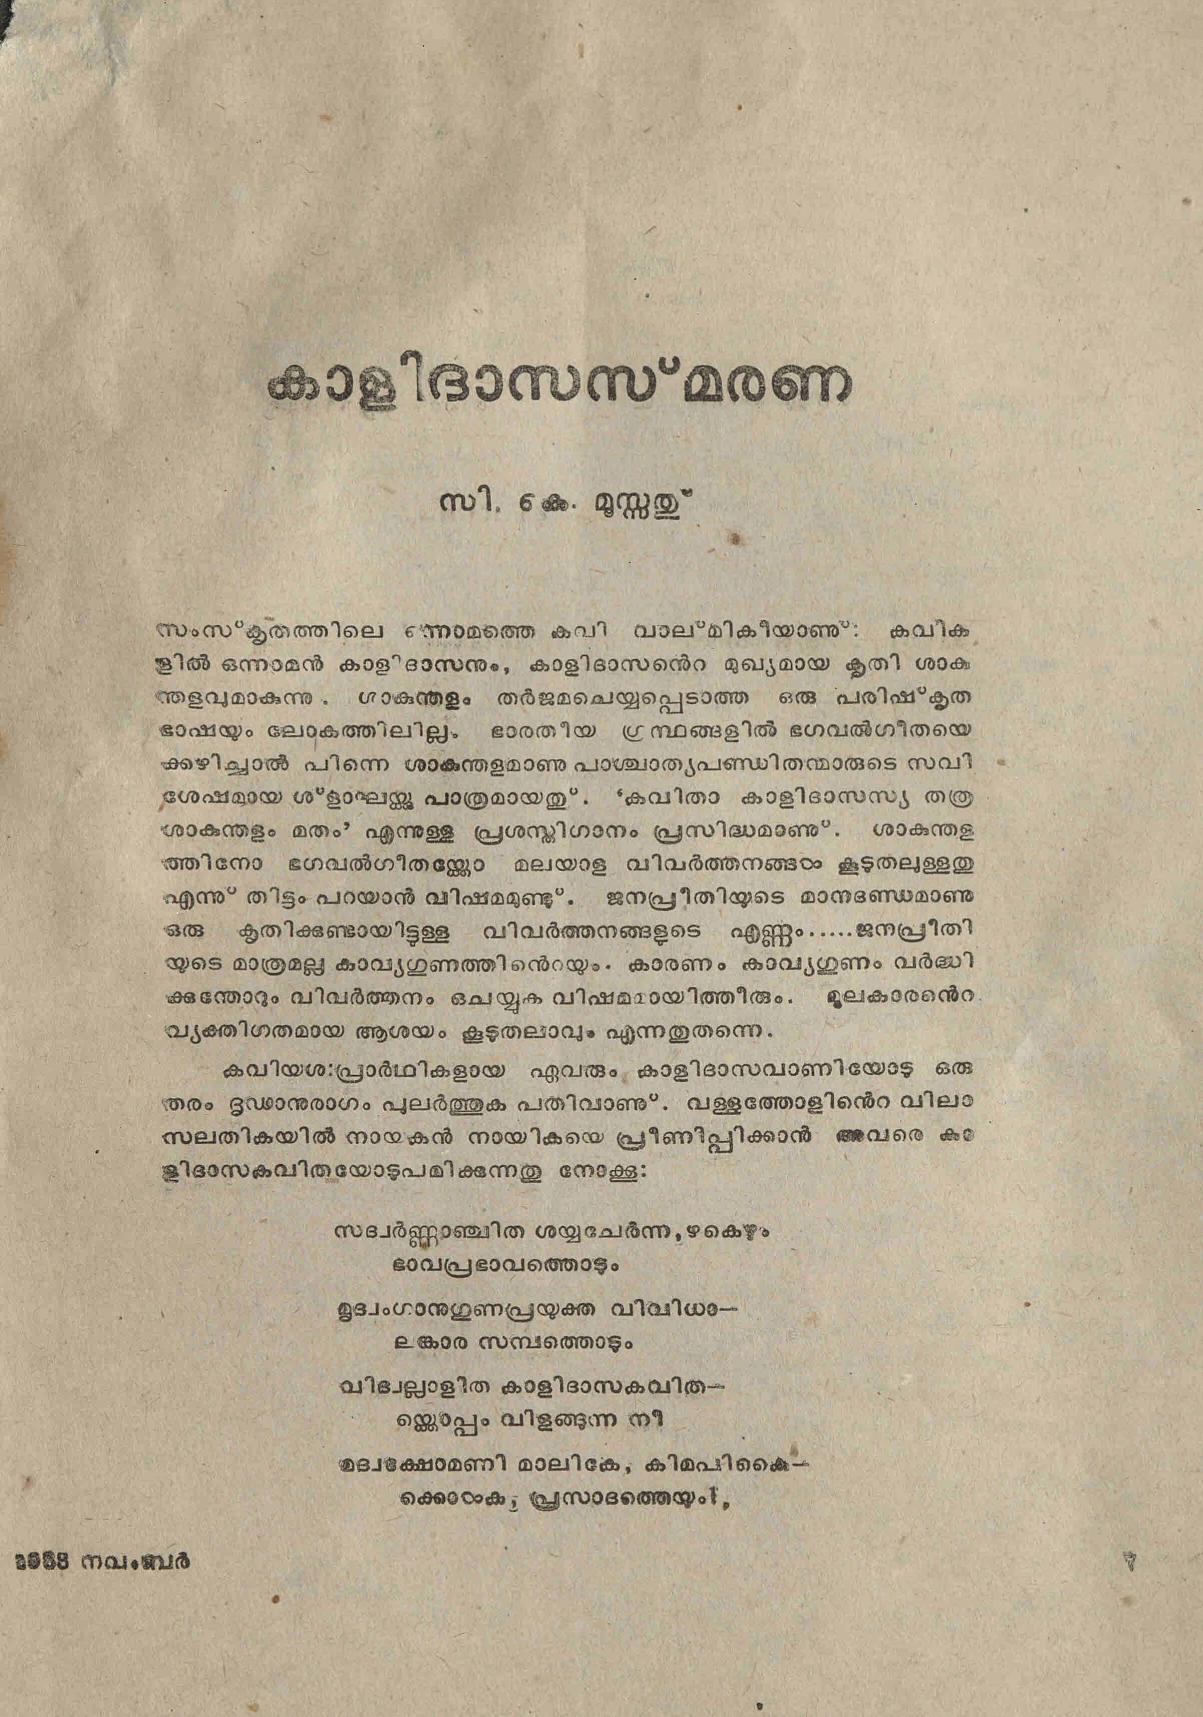 1985 - കാളിദാസ സ്മരണ - സി. കെ. മൂസ്സത്